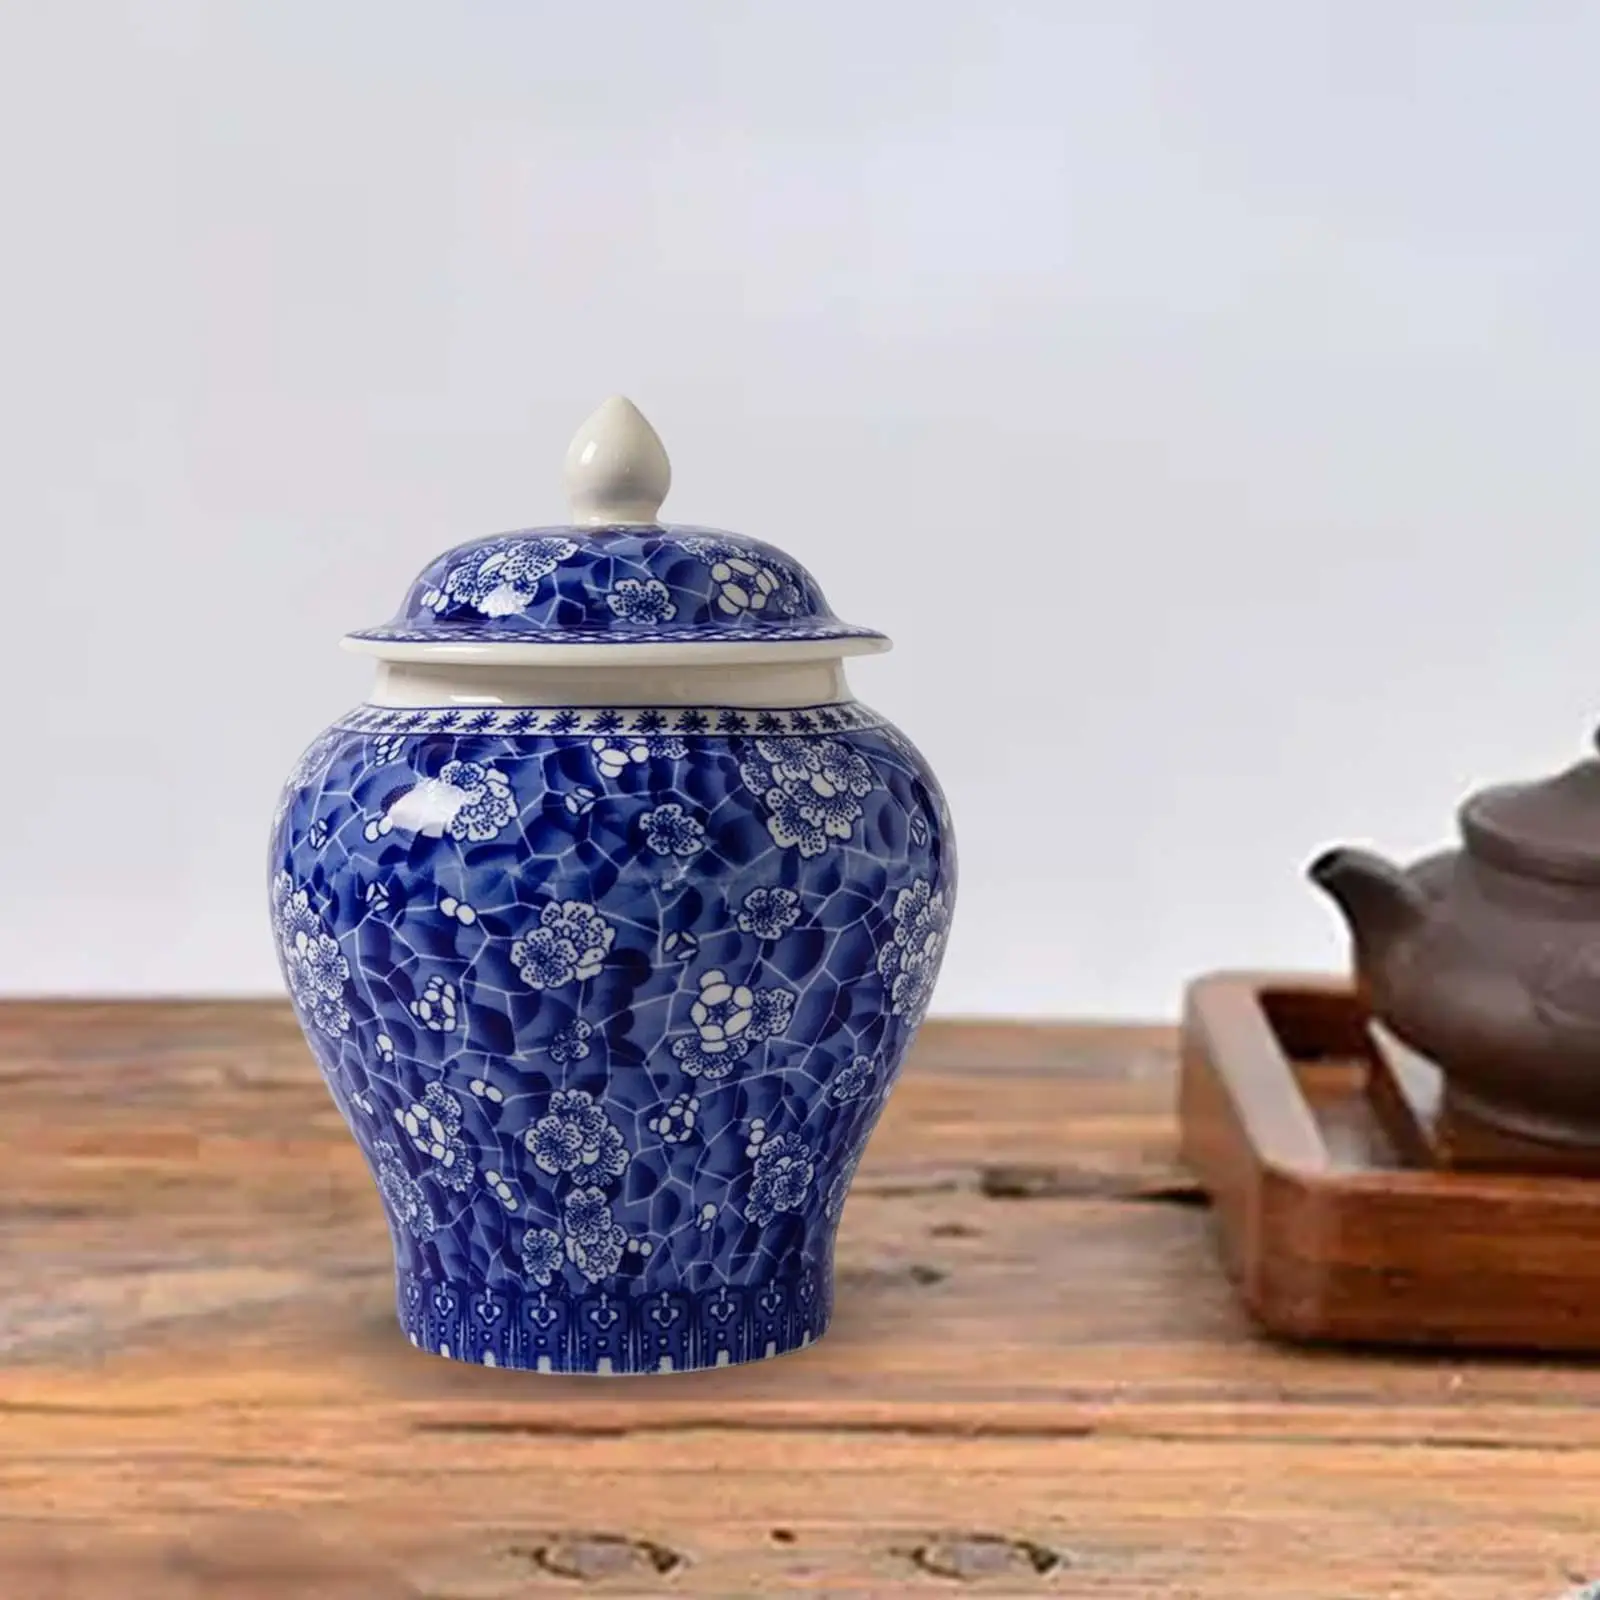 Ceramic Ginger Jar Vintage Style Gift Chinese Crafts Porcelain Jars for Desktop Home Decor Countertop Party Floral Arrangement